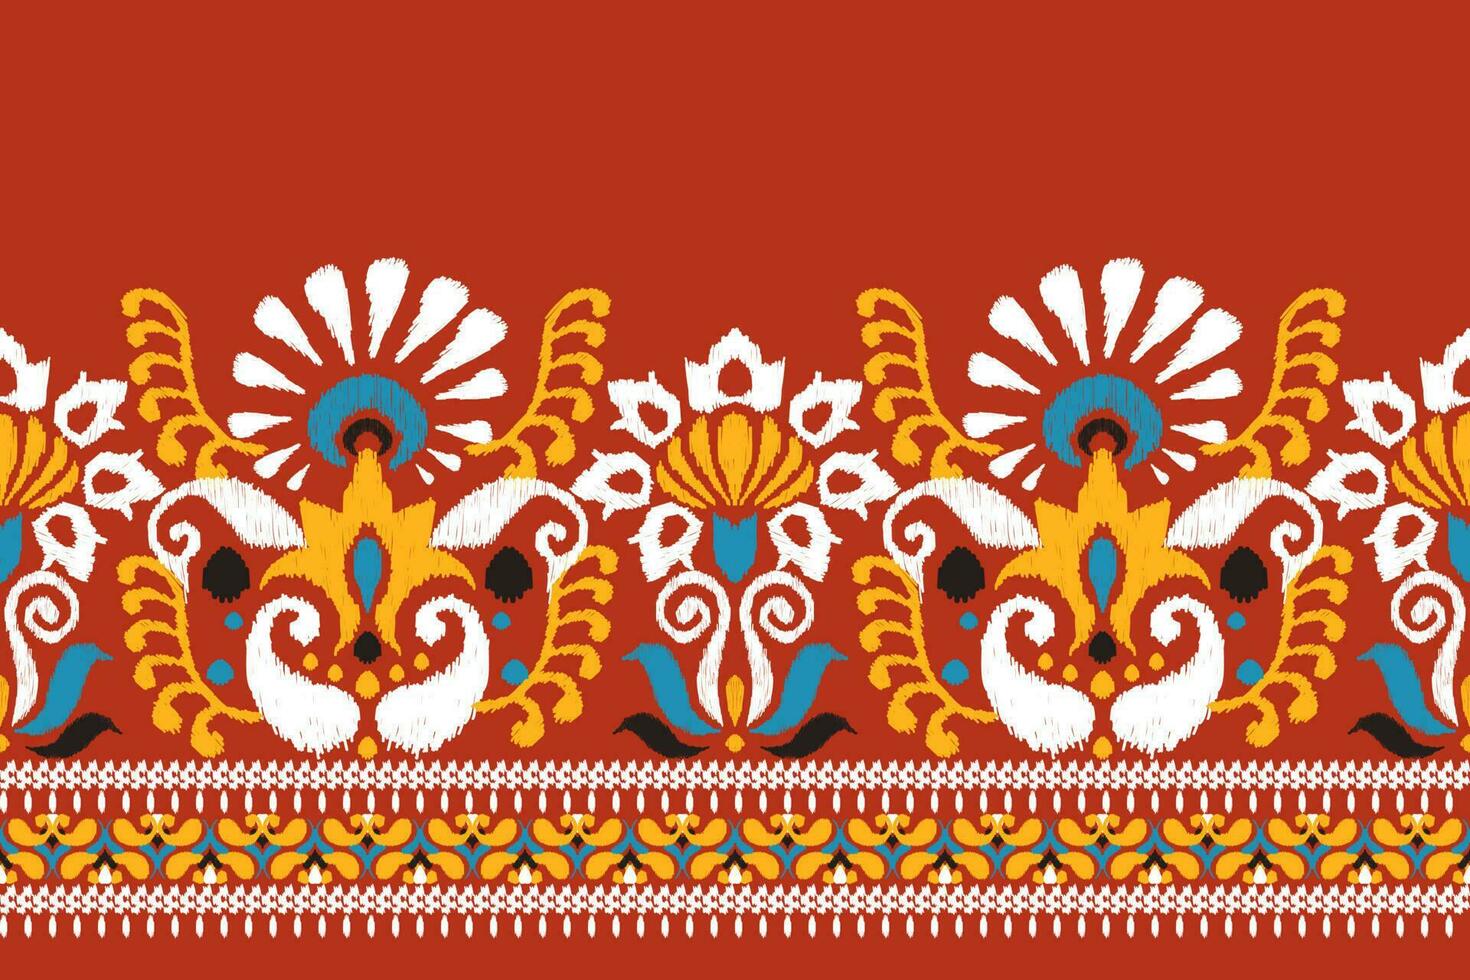 indiano ikat floral paisley bordado em vermelho plano de fundo.ikat étnico oriental padronizar tradicional.asteca estilo abstrato vetor ilustração.design para textura,tecido,vestuário,embrulho,decoração,canga.